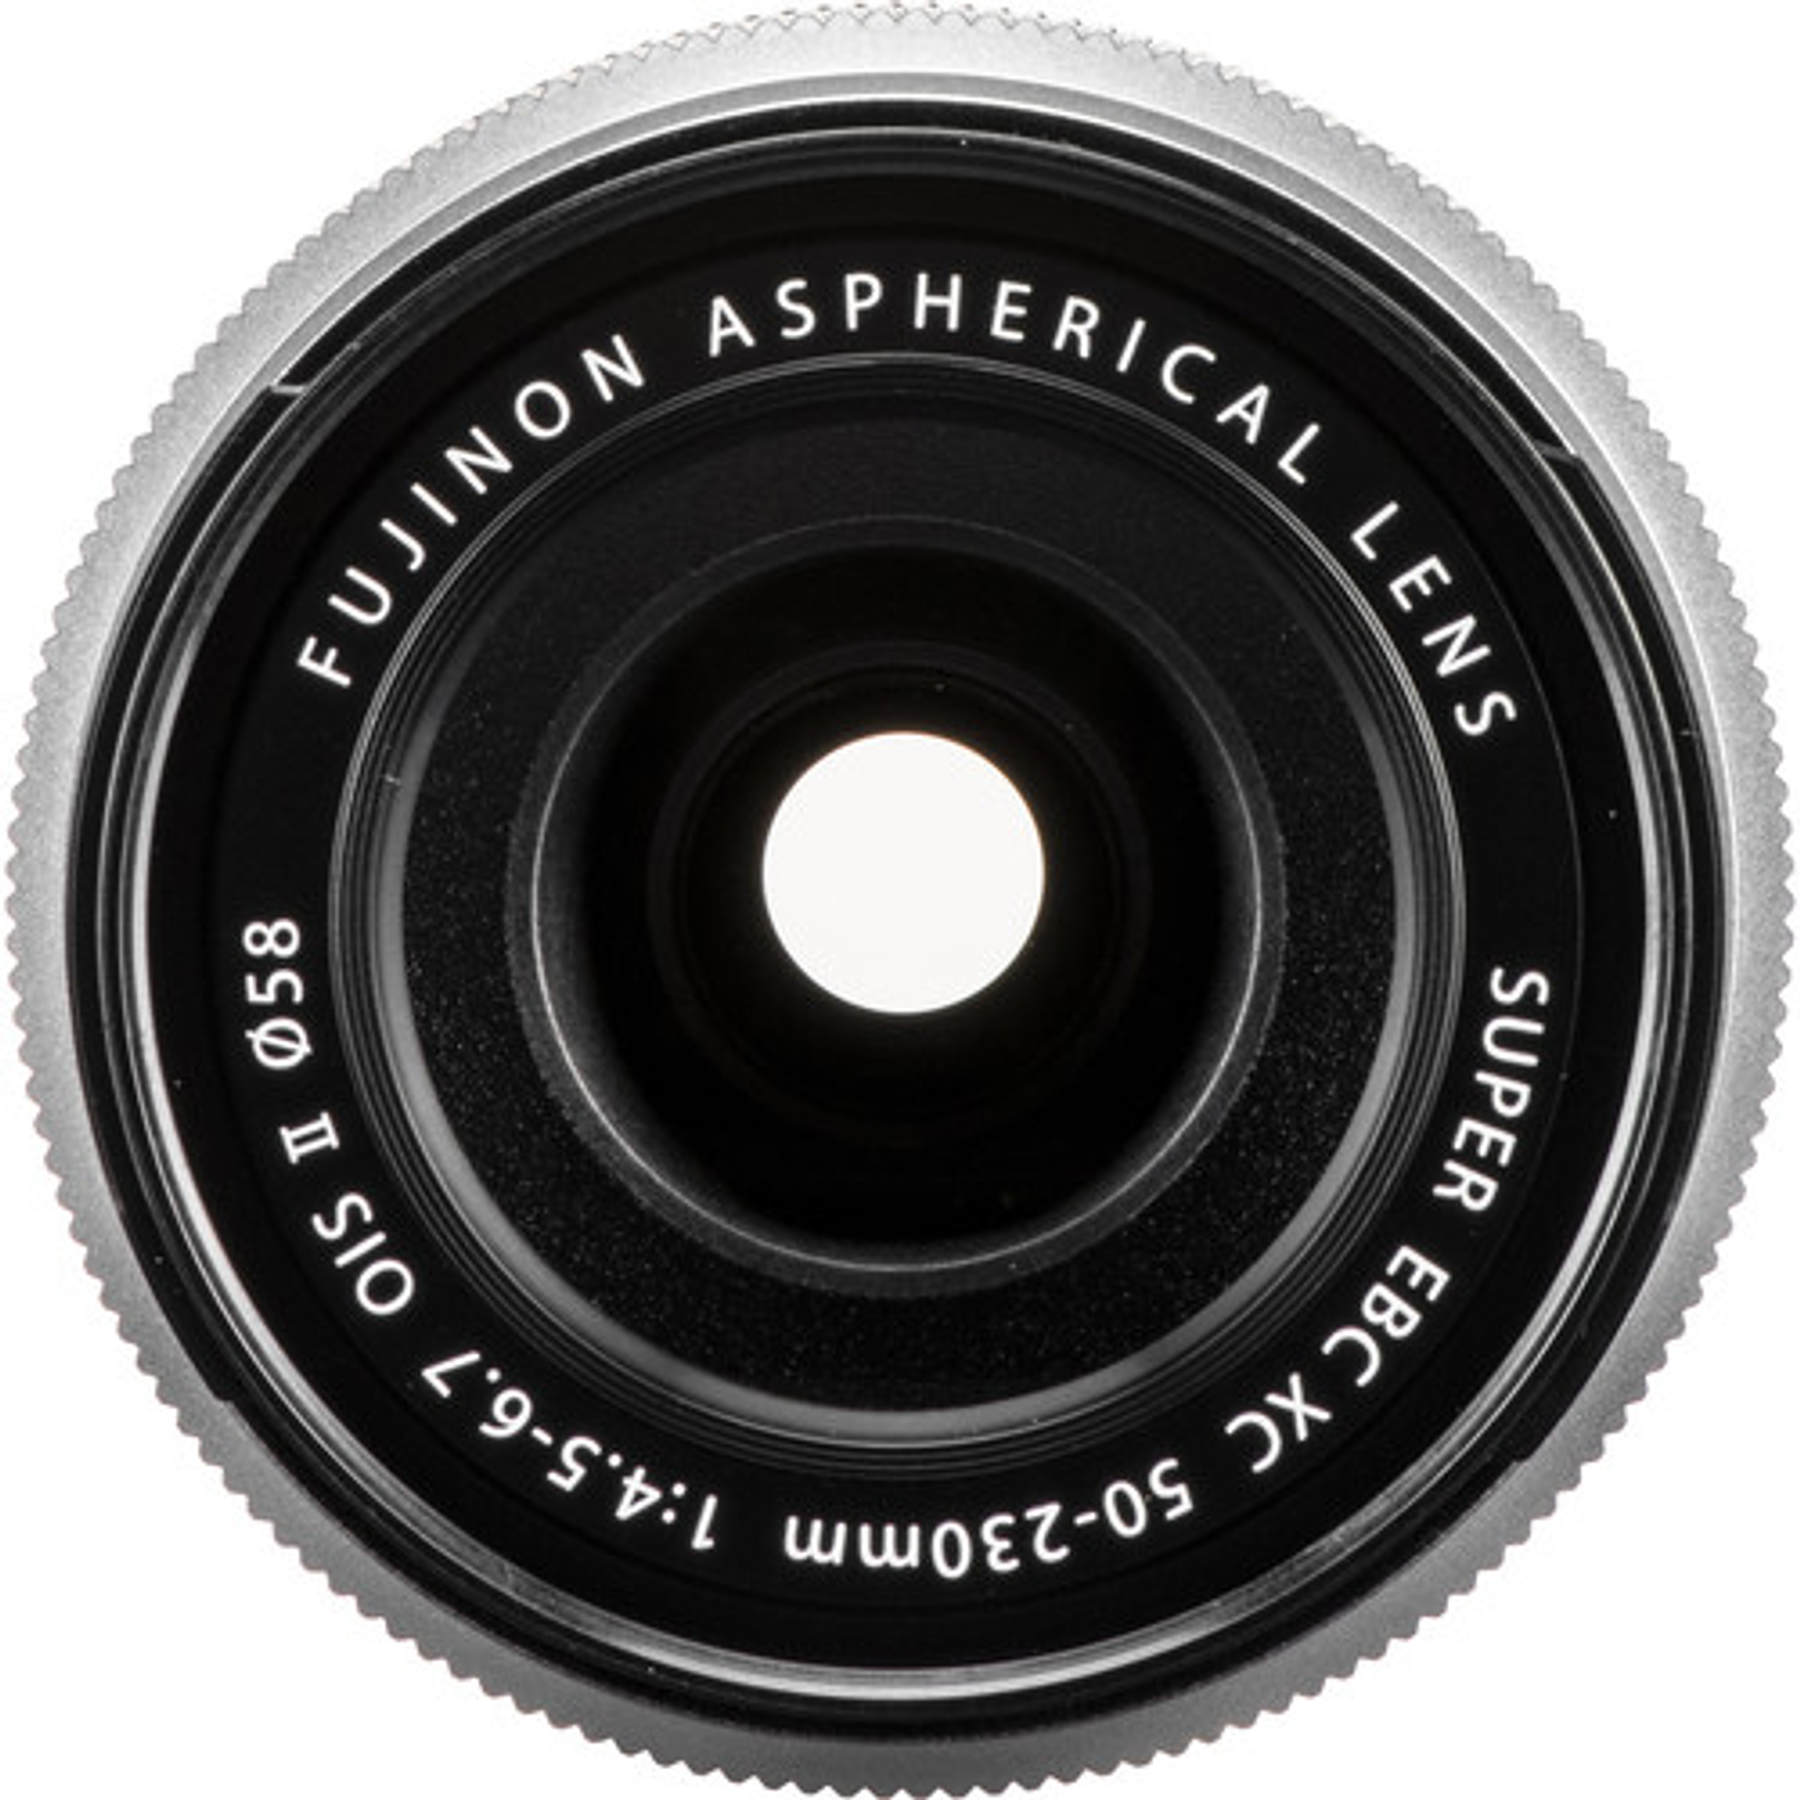 Fujifilm XC 50-230mm. F4.5-6.7 OIS II